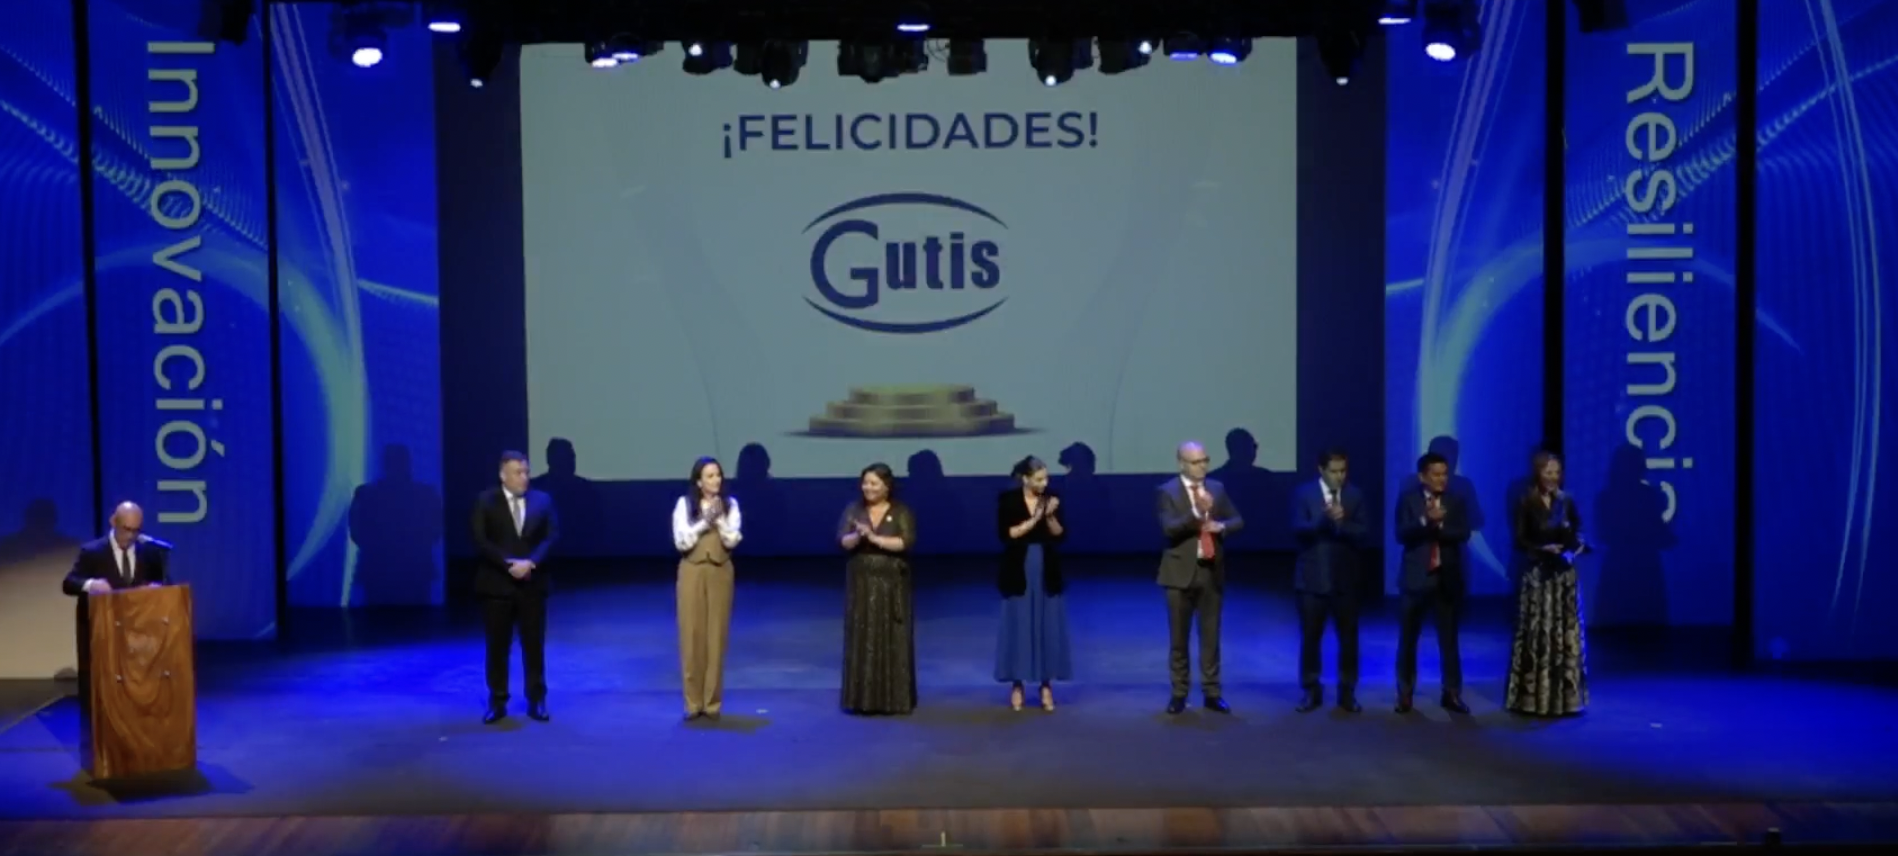 Gutis fue premiado como el exportador más innovador